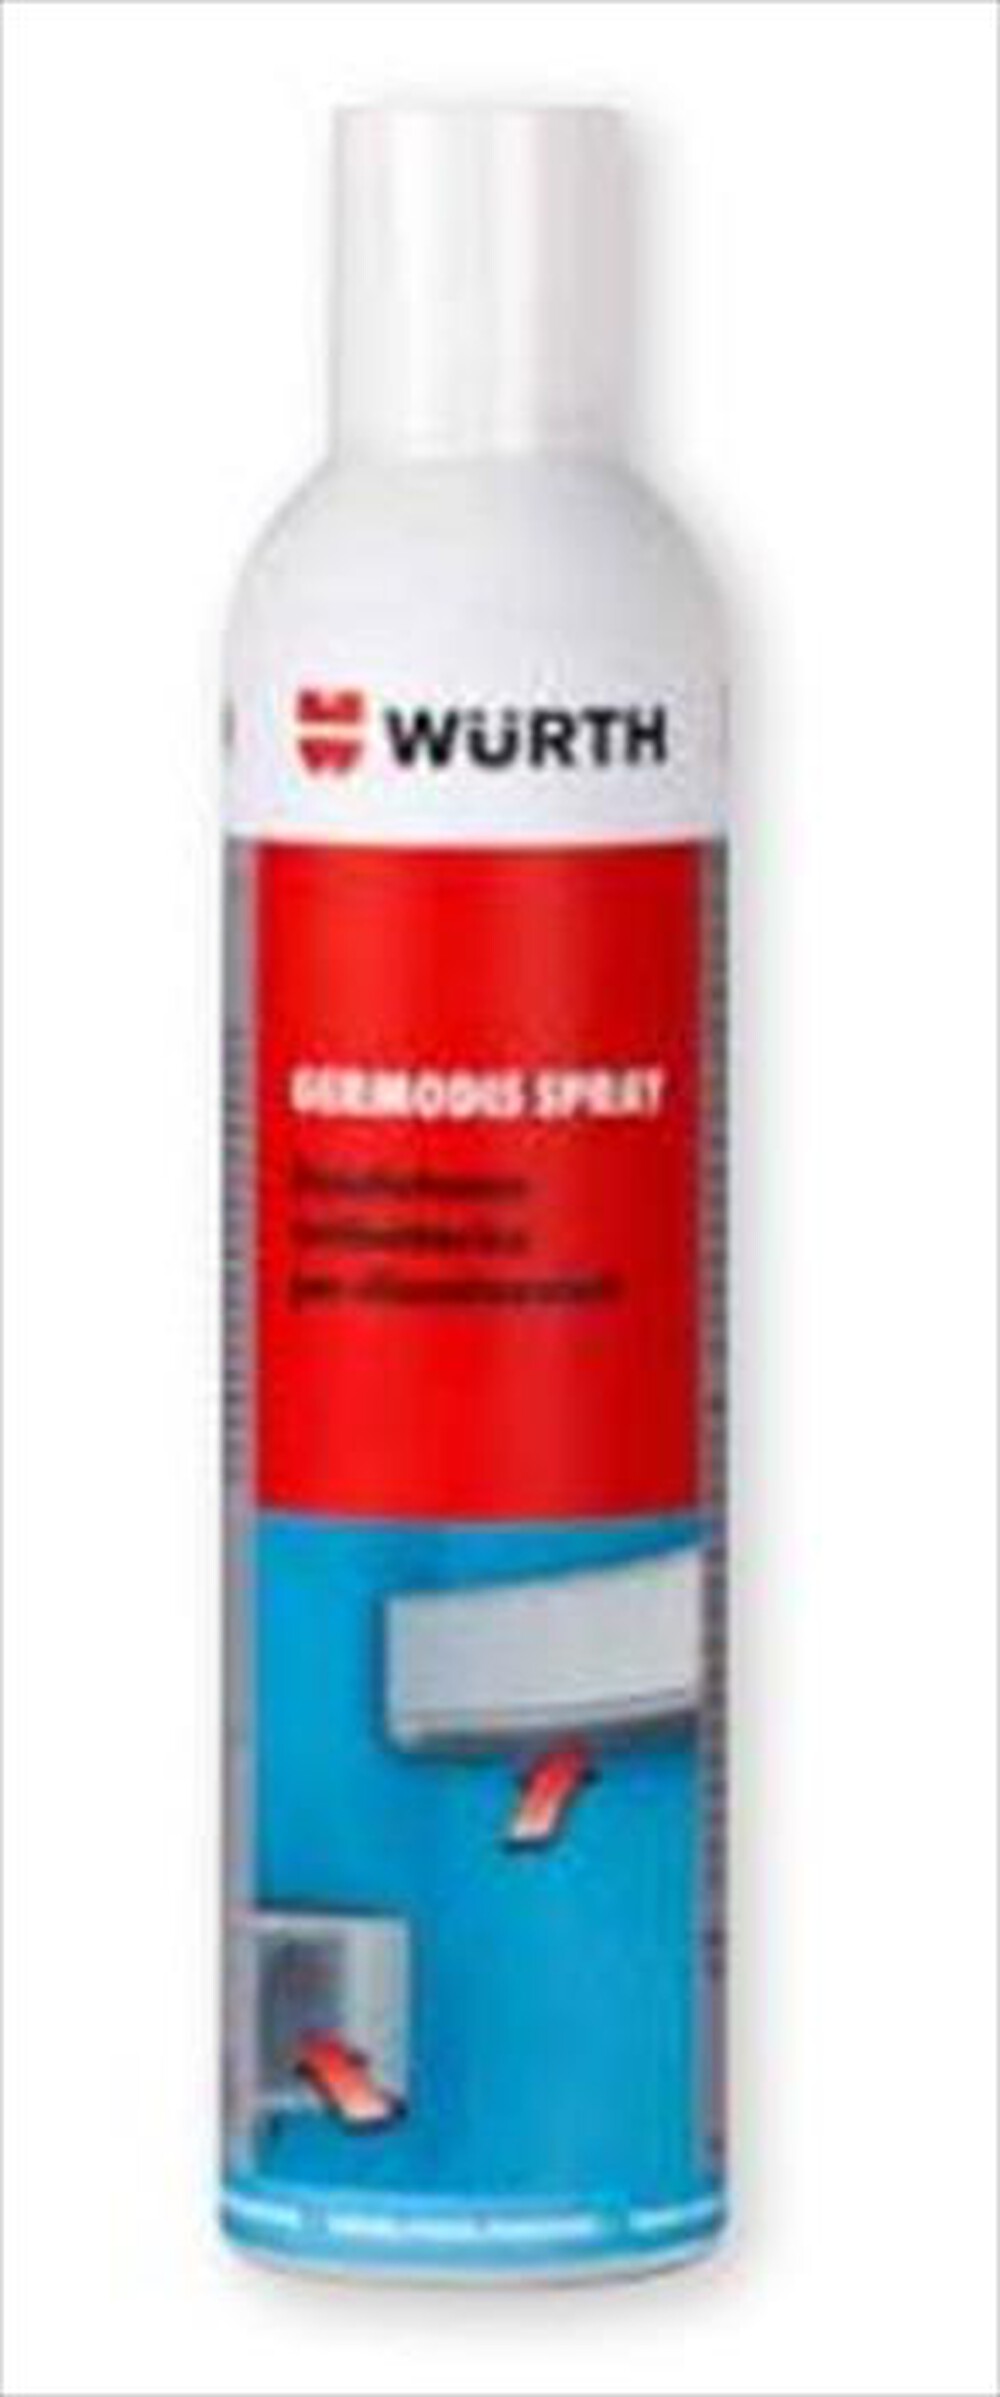 "WURTH - Disinfettante Deodorante Germodis Spray"